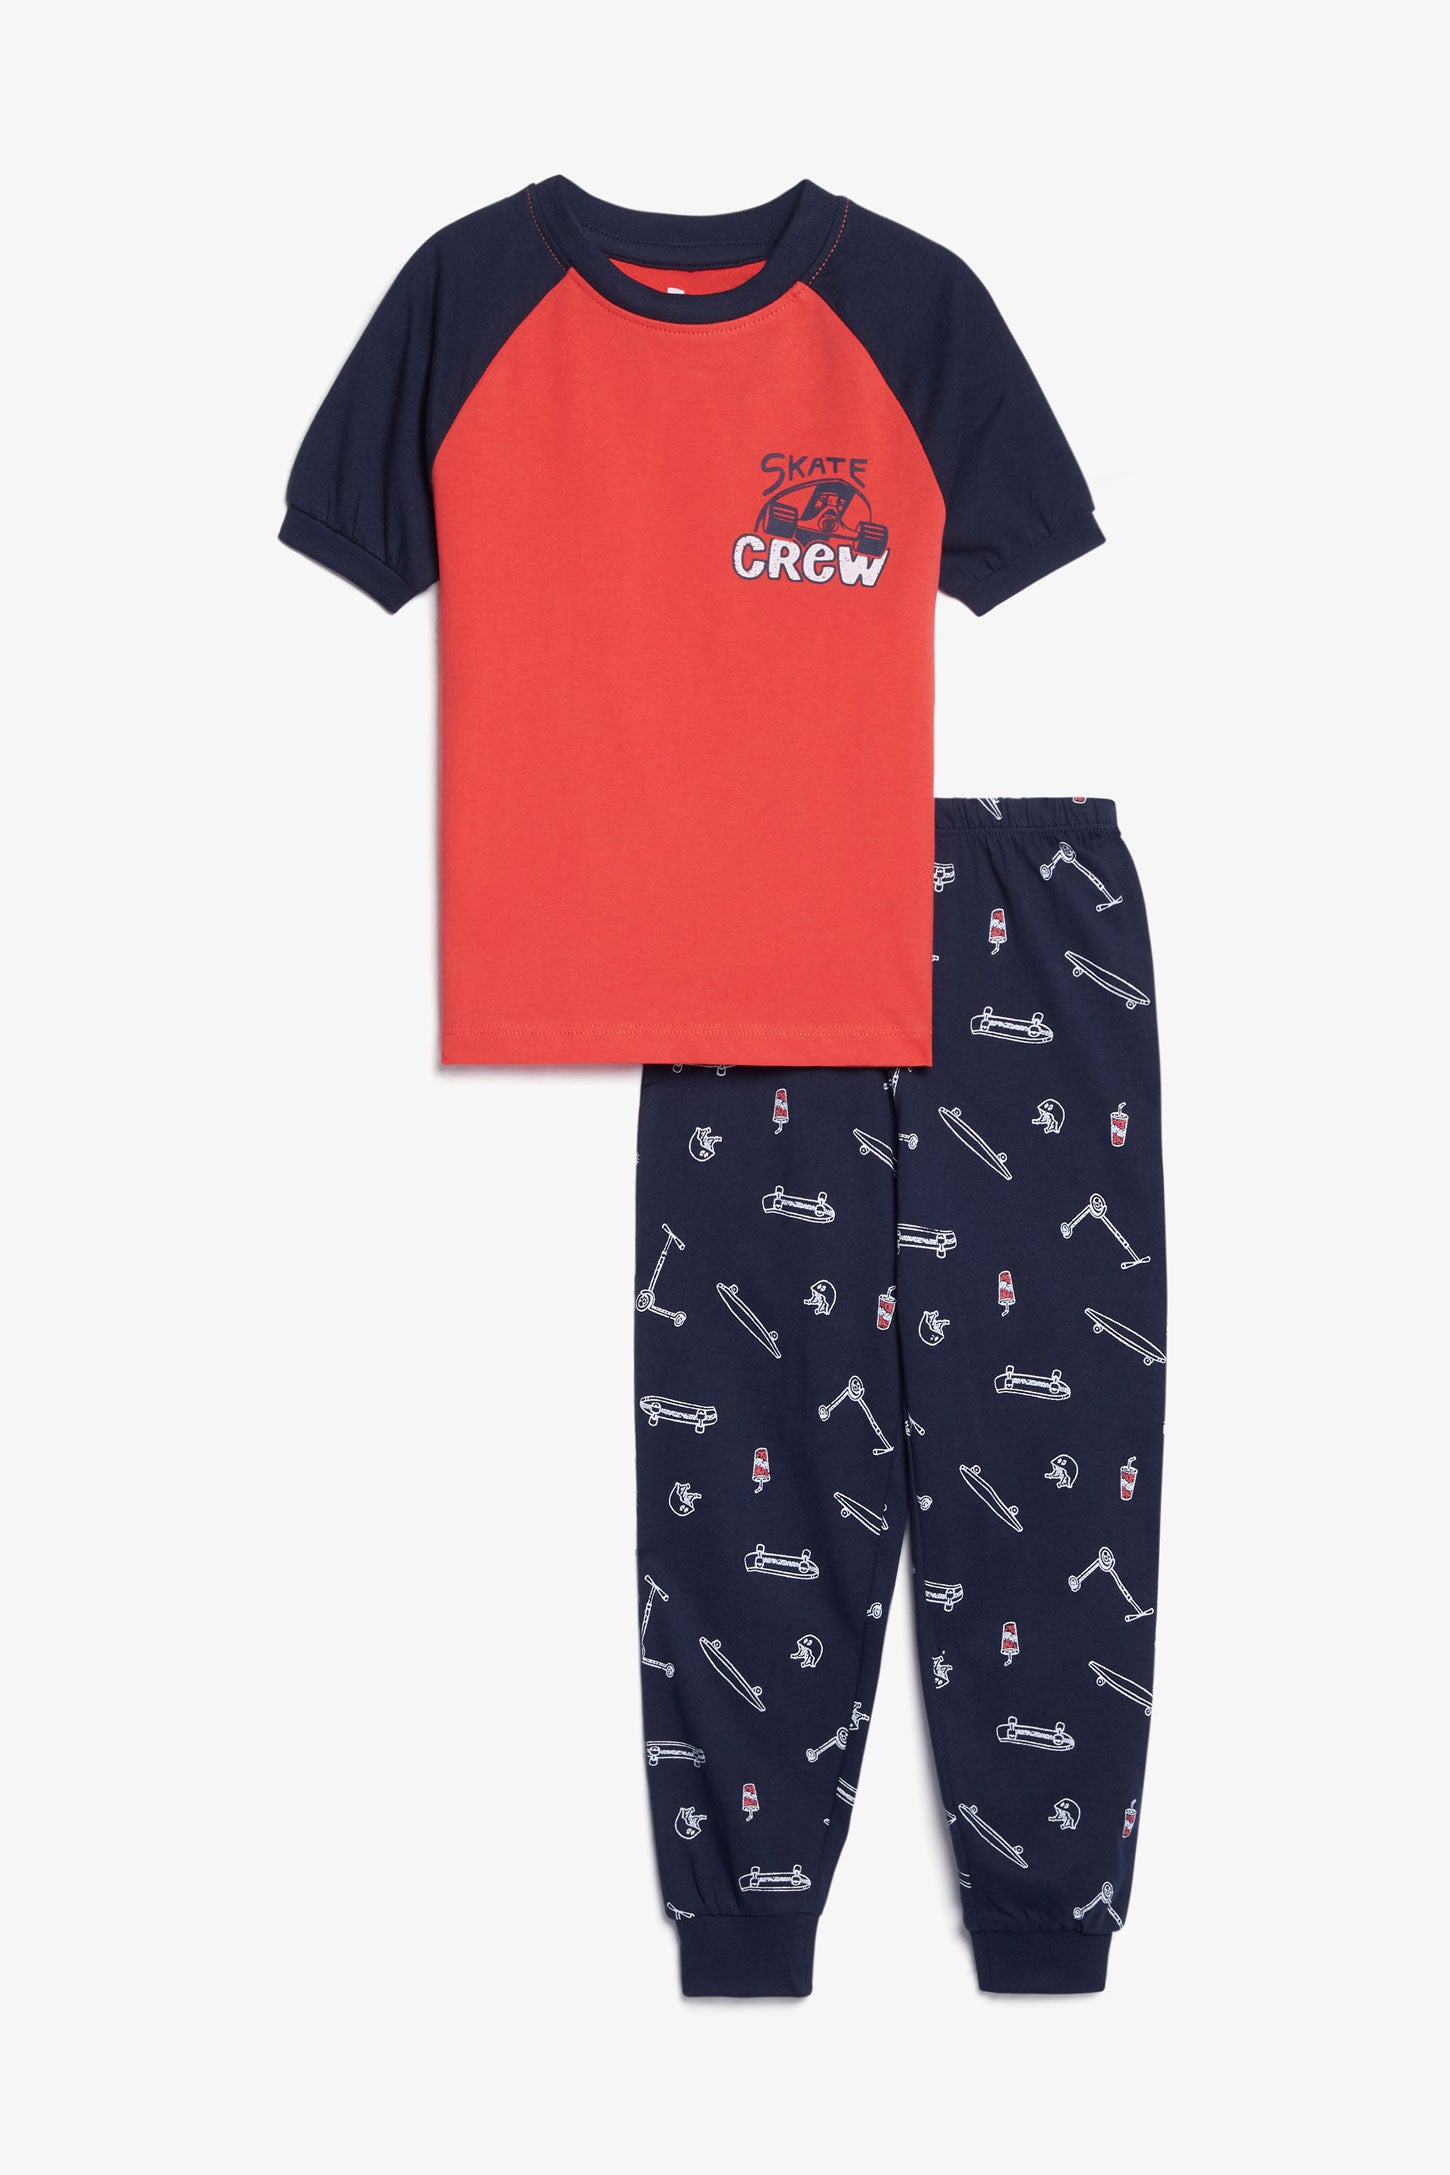 Pyjama 2-pièces en coton, 2/35$ - Enfant garçon && ROUGE